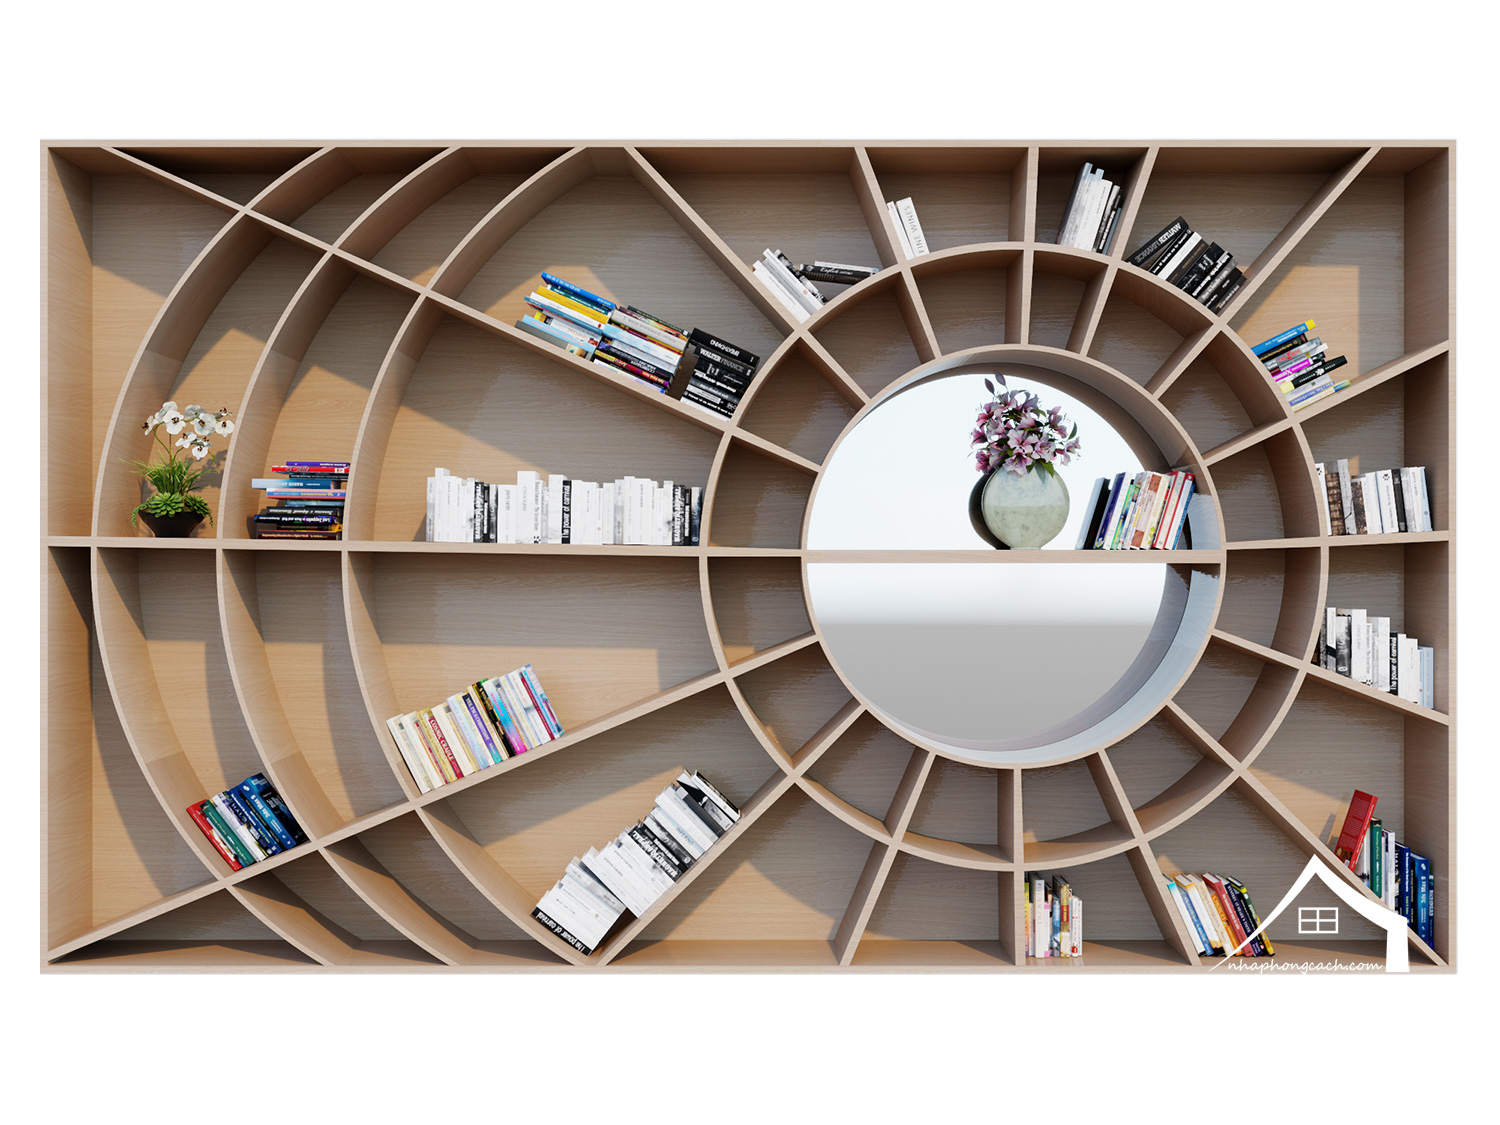 ke-sach-hinh-tron-(-circle-shaped-bookshelf)